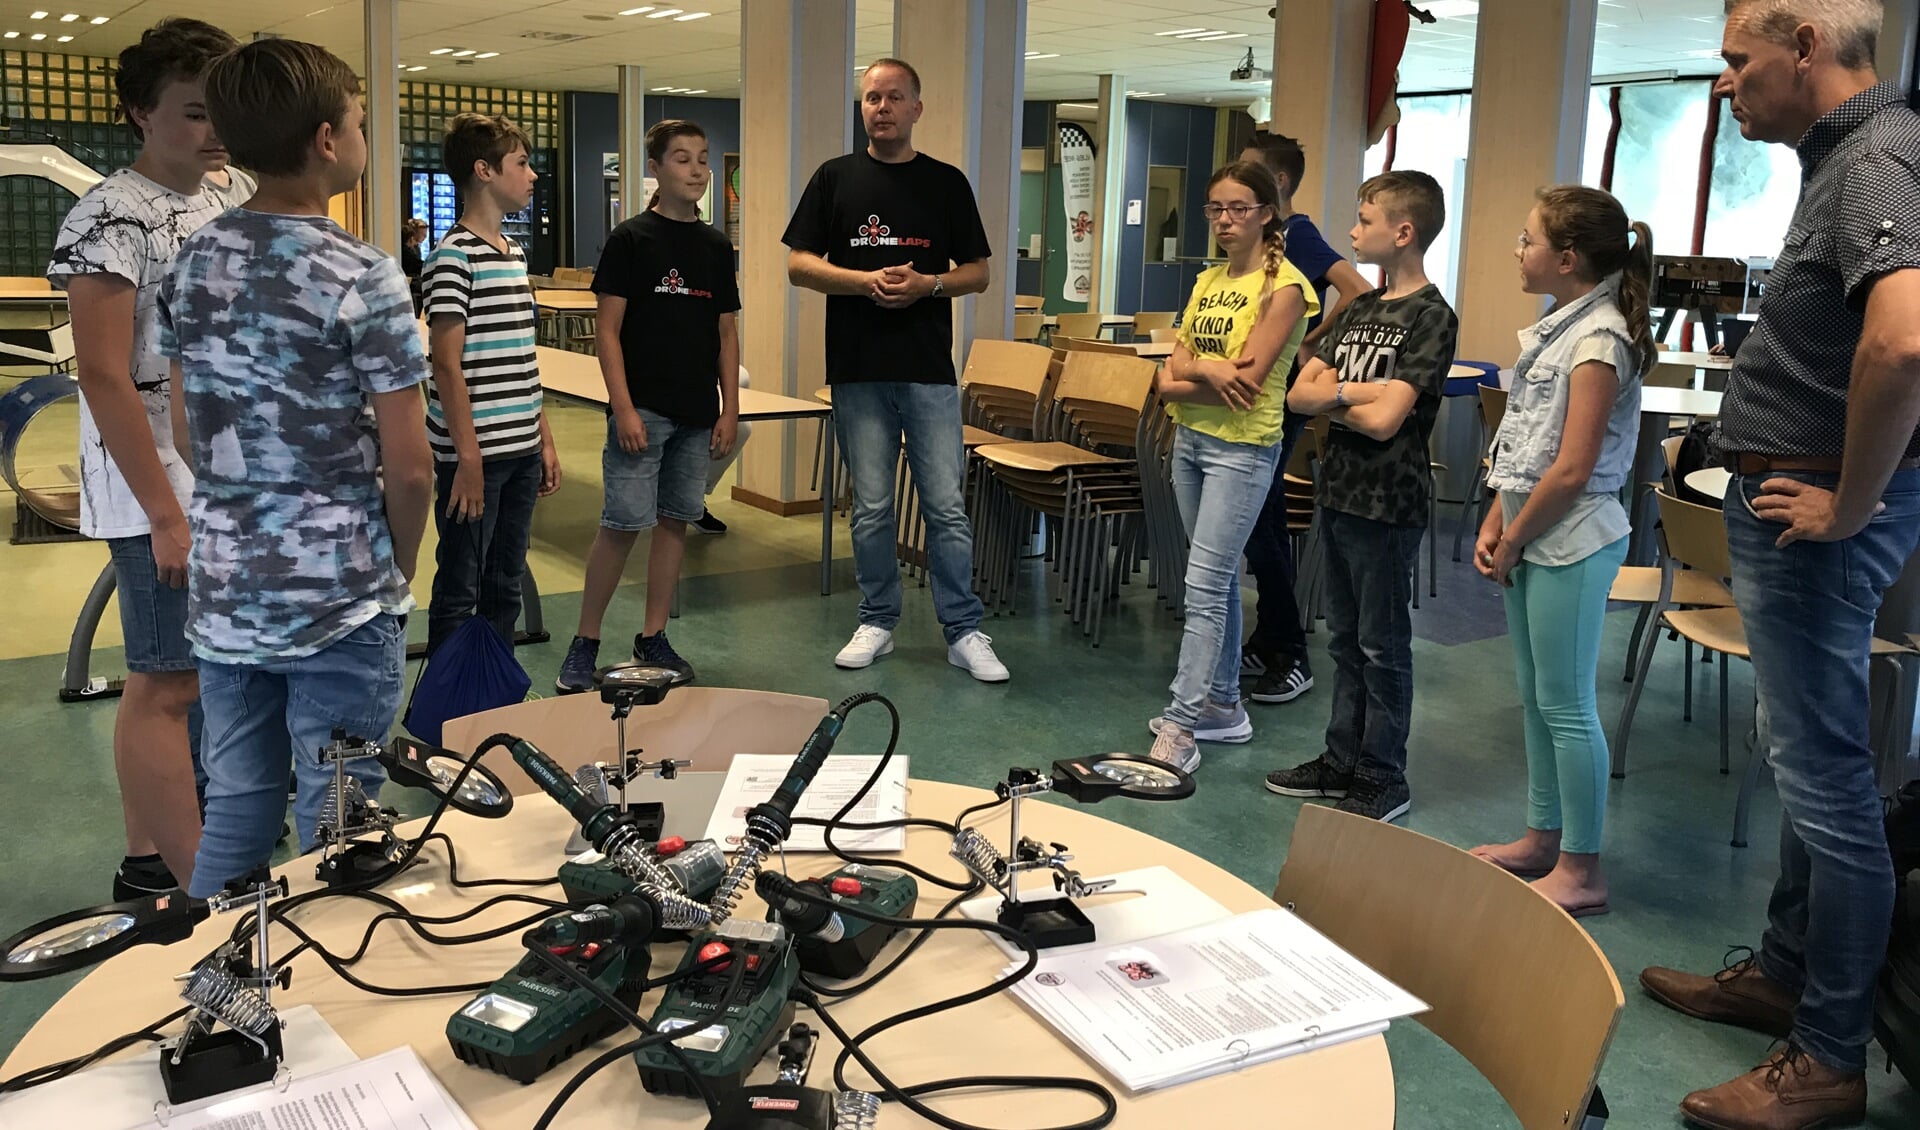 Rubin en zijn vader (midden) verzorgden voor de leerlingen een workshop 'drone bouwen'. (Foto: aangeleverd)